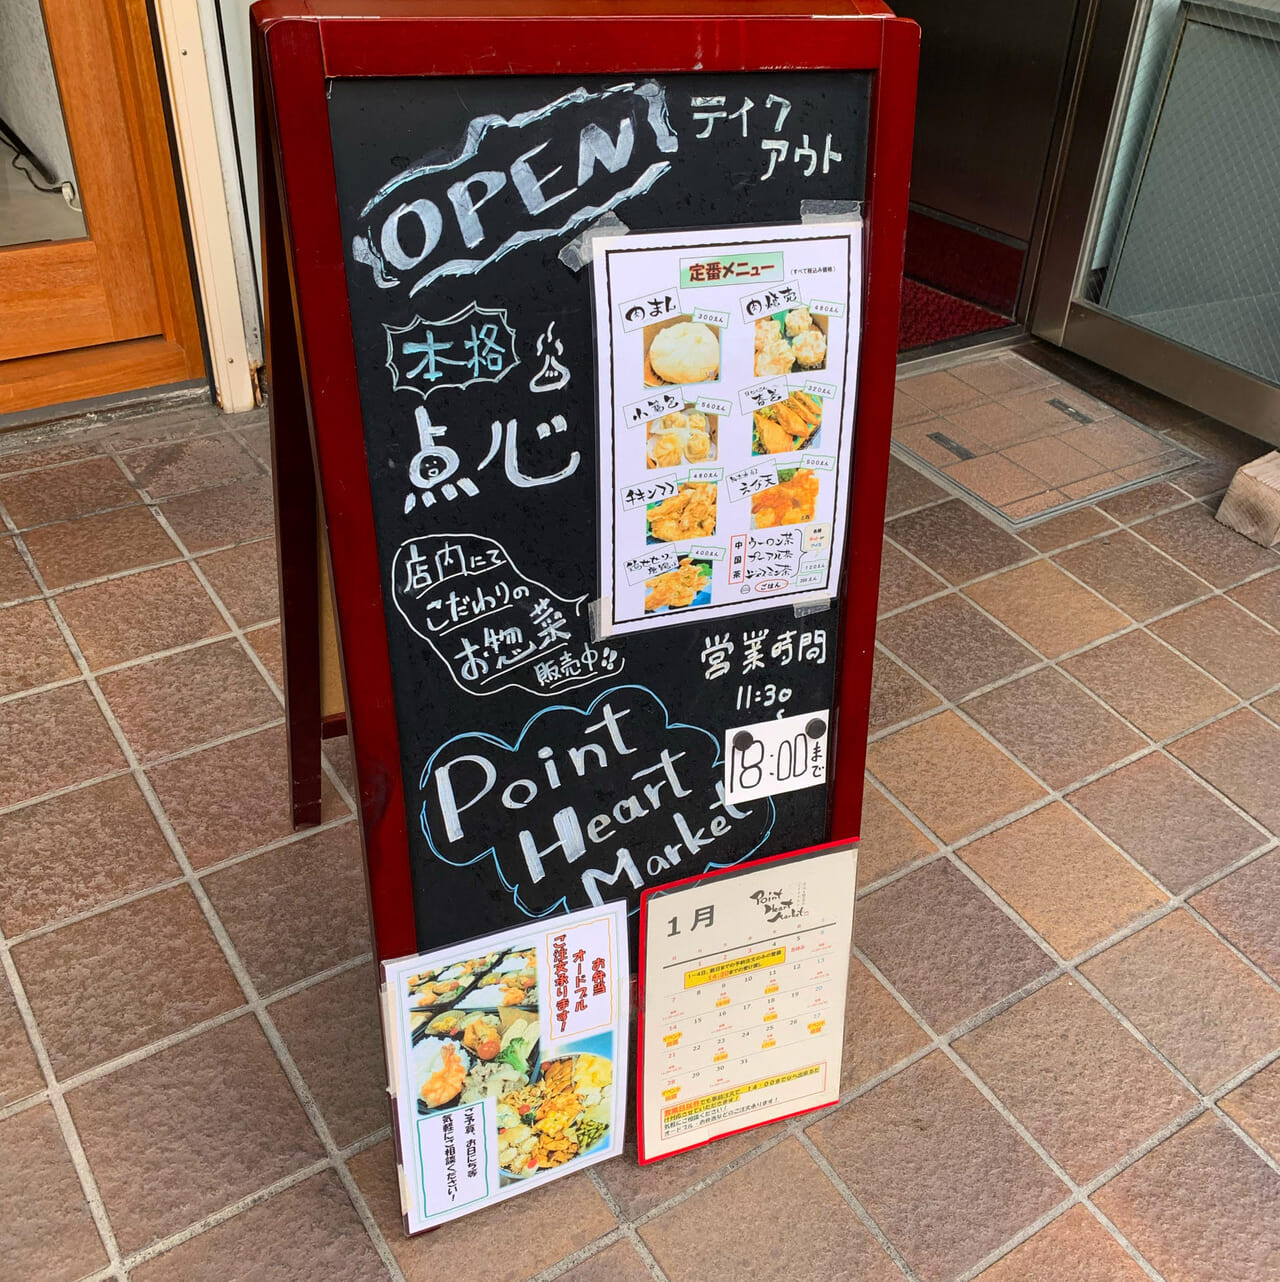 松本町の点心と総菜のテイクアウト専門店「Point Heart Market」の点心は拘って作られていました!!